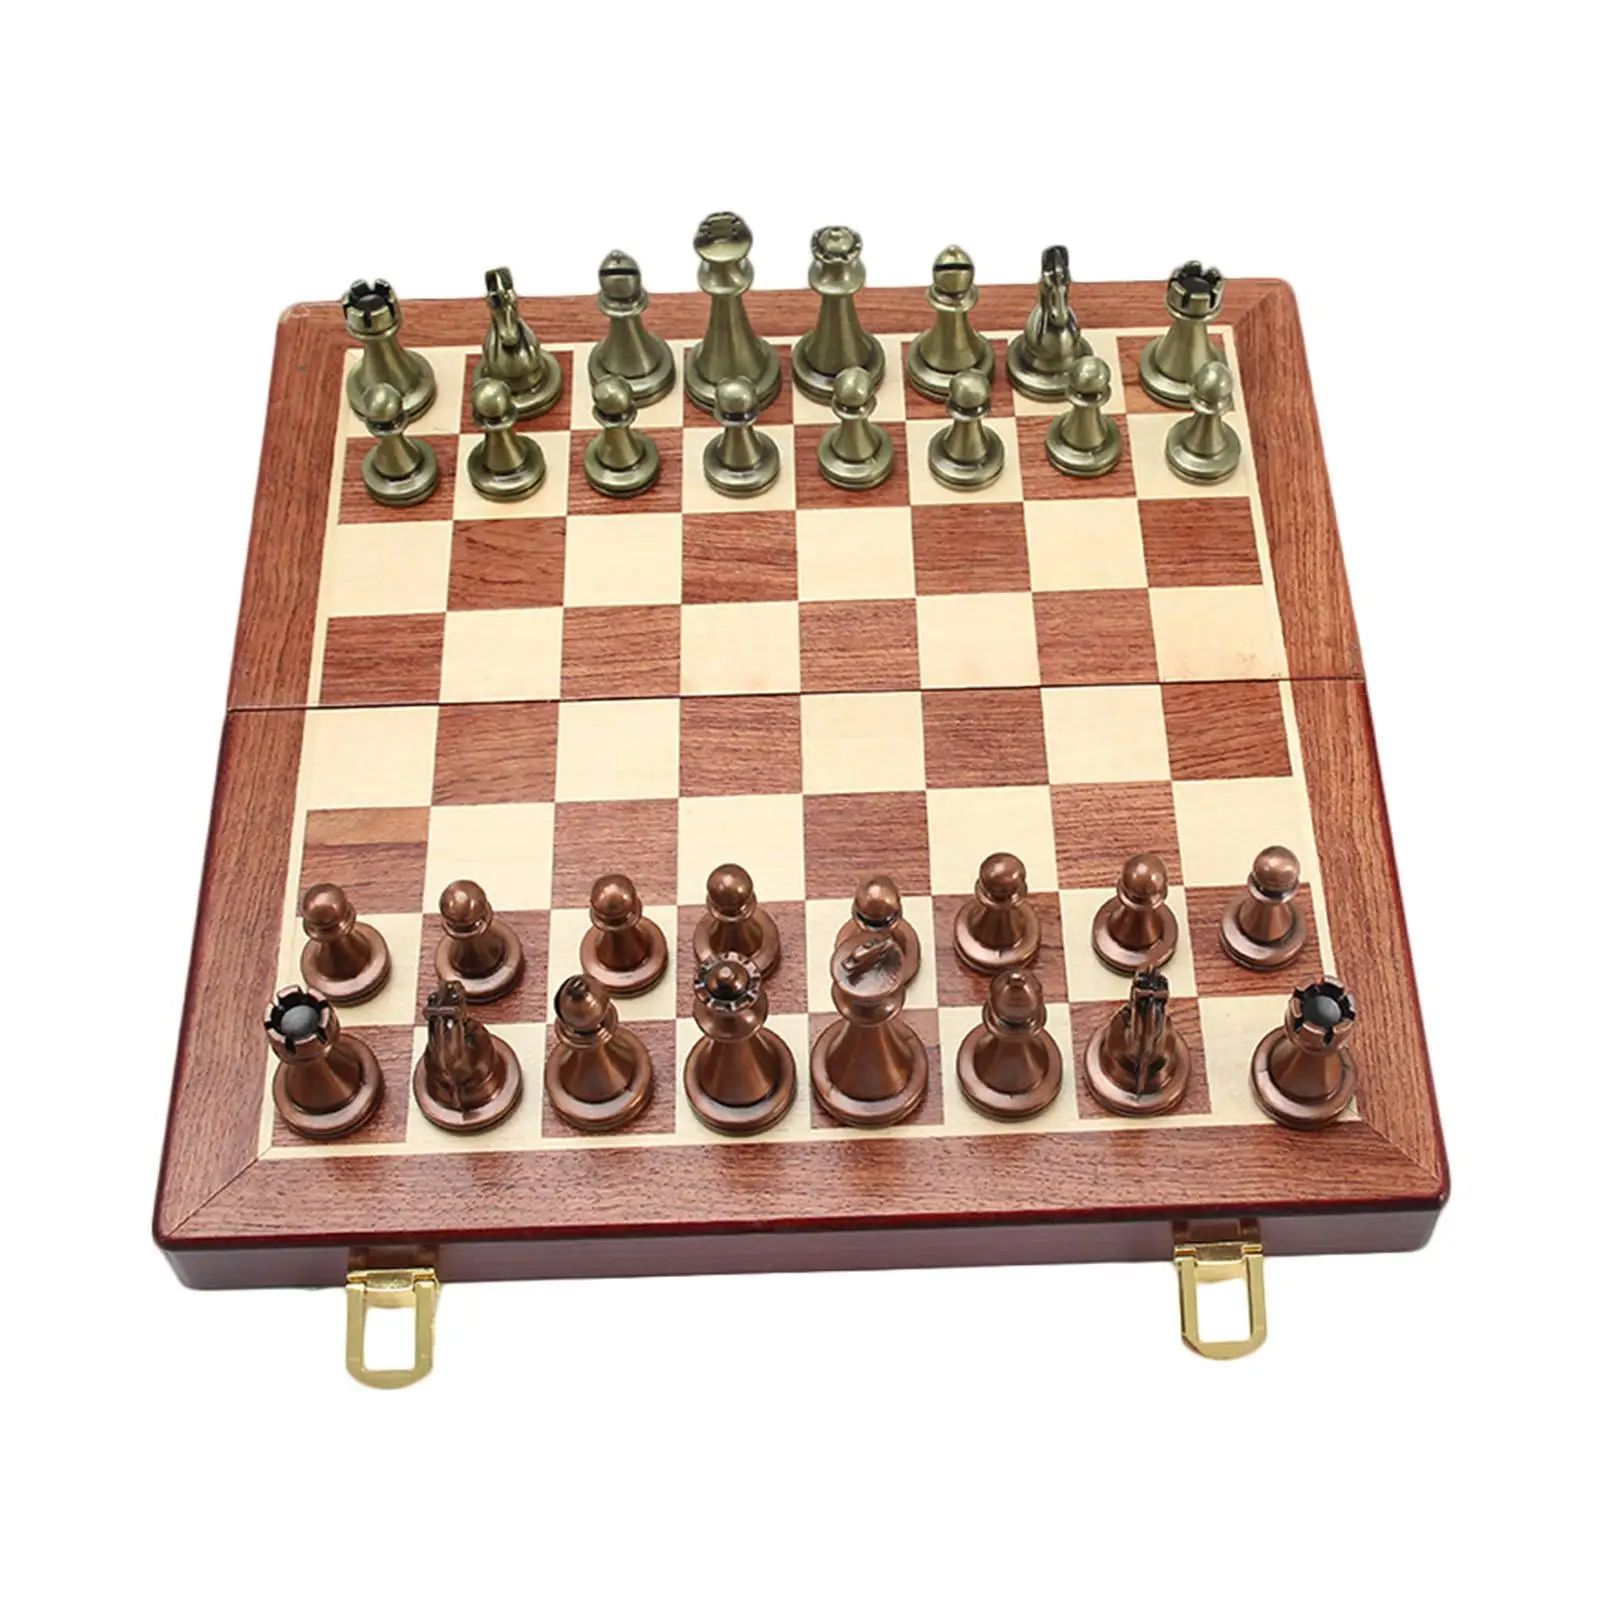 Творческий 1 комплект шахматная доска игрушки развивающие складные шахматы комплект Портативный головоломки игры в шахматы для дома интер... от AliExpress RU&CIS NEW